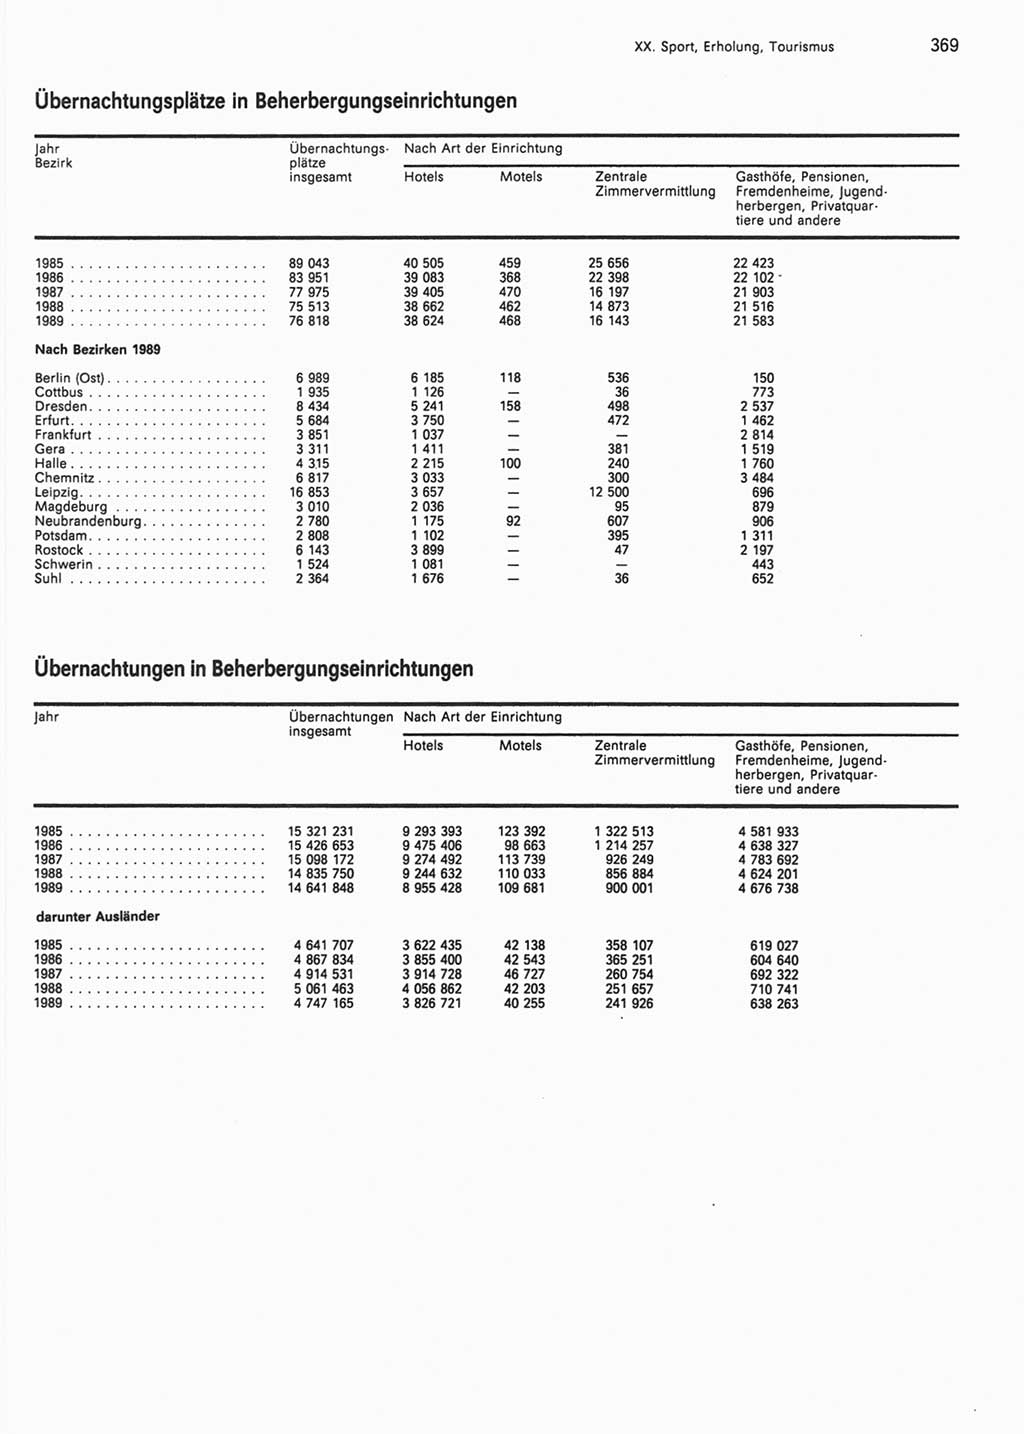 Statistisches Jahrbuch der Deutschen Demokratischen Republik (DDR) 1990, Seite 369 (Stat. Jb. DDR 1990, S. 369)